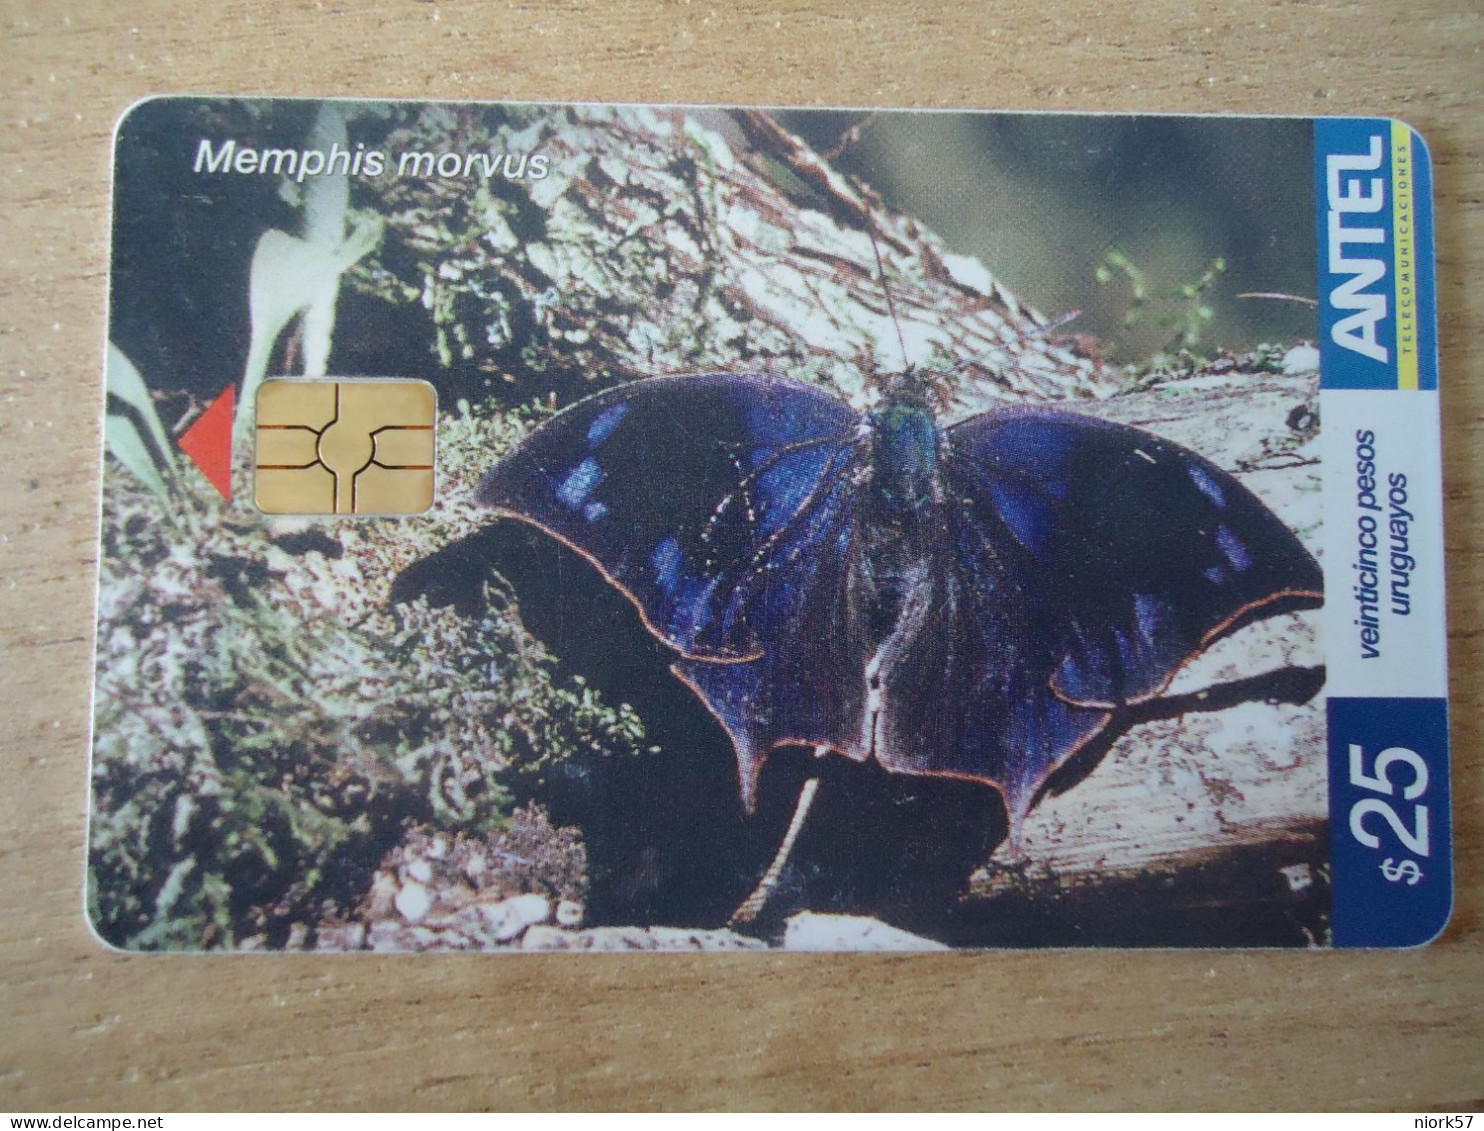 URUGUAY  USED CARDS  BUTTERFLIES  25 - Farfalle